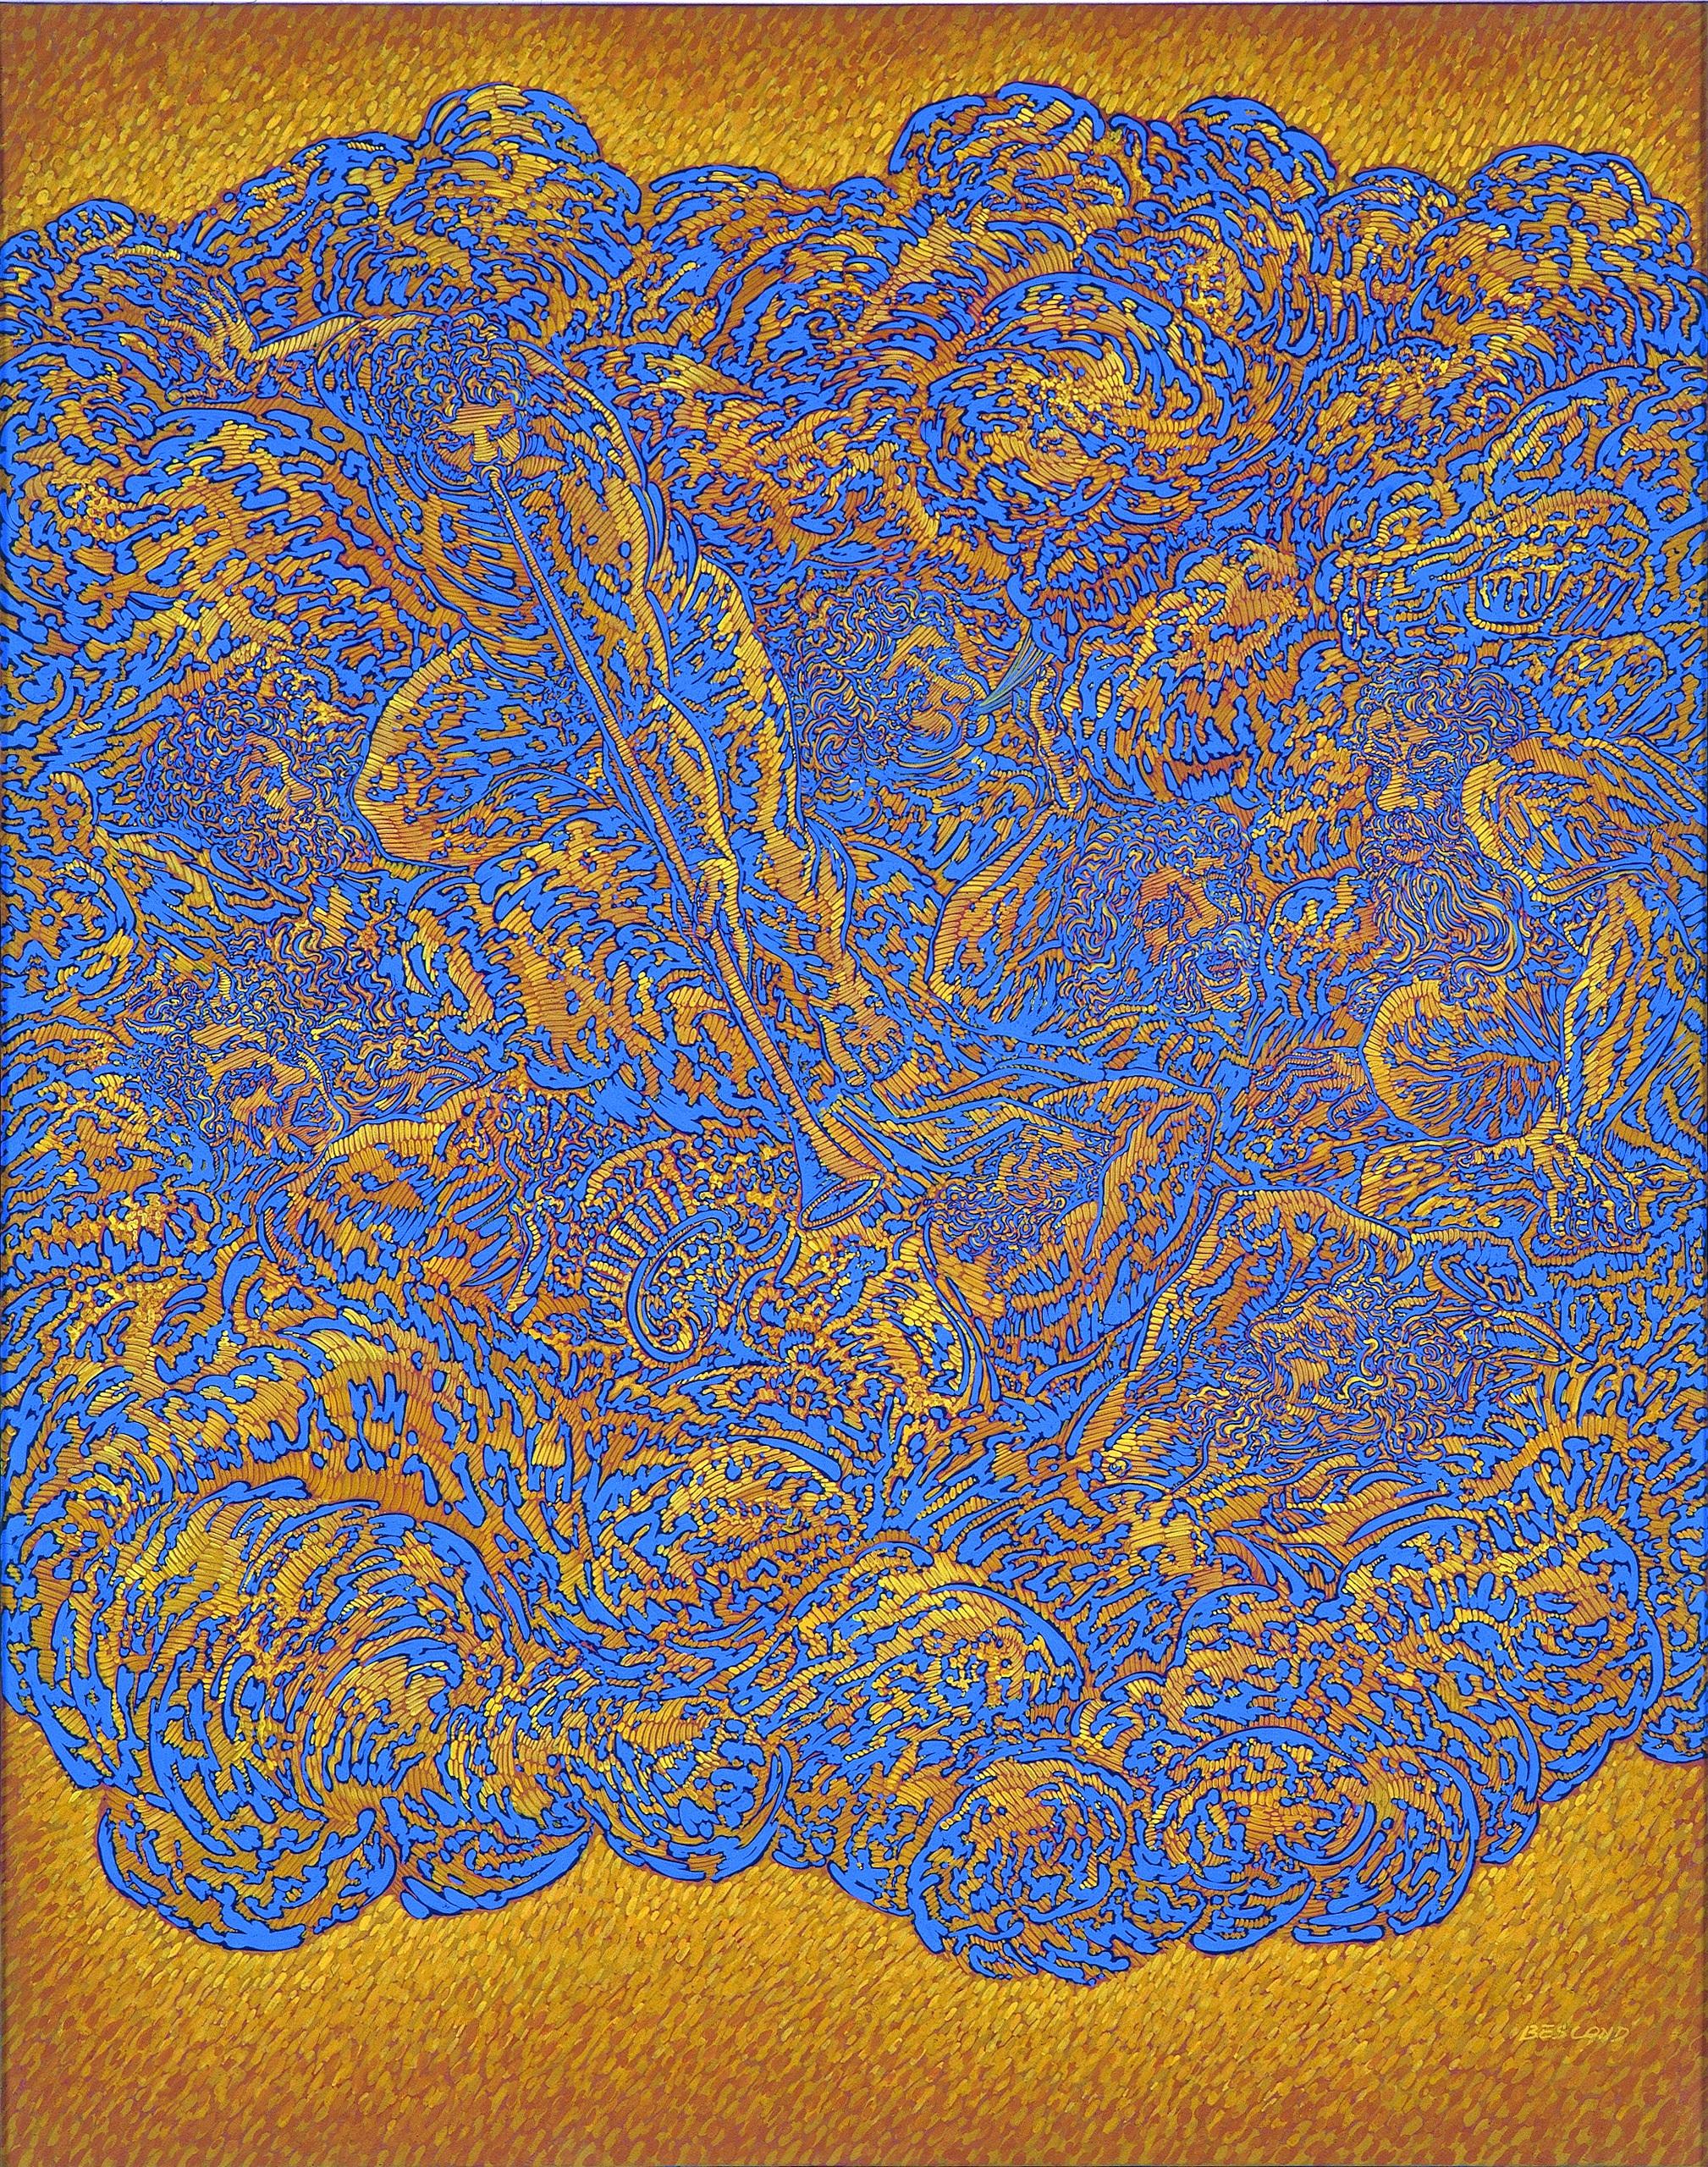 Abstract Painting Béatrice Bescond - « Breasting I », peinture abstraite à l'acrylique bleu saphir et jaune ocre